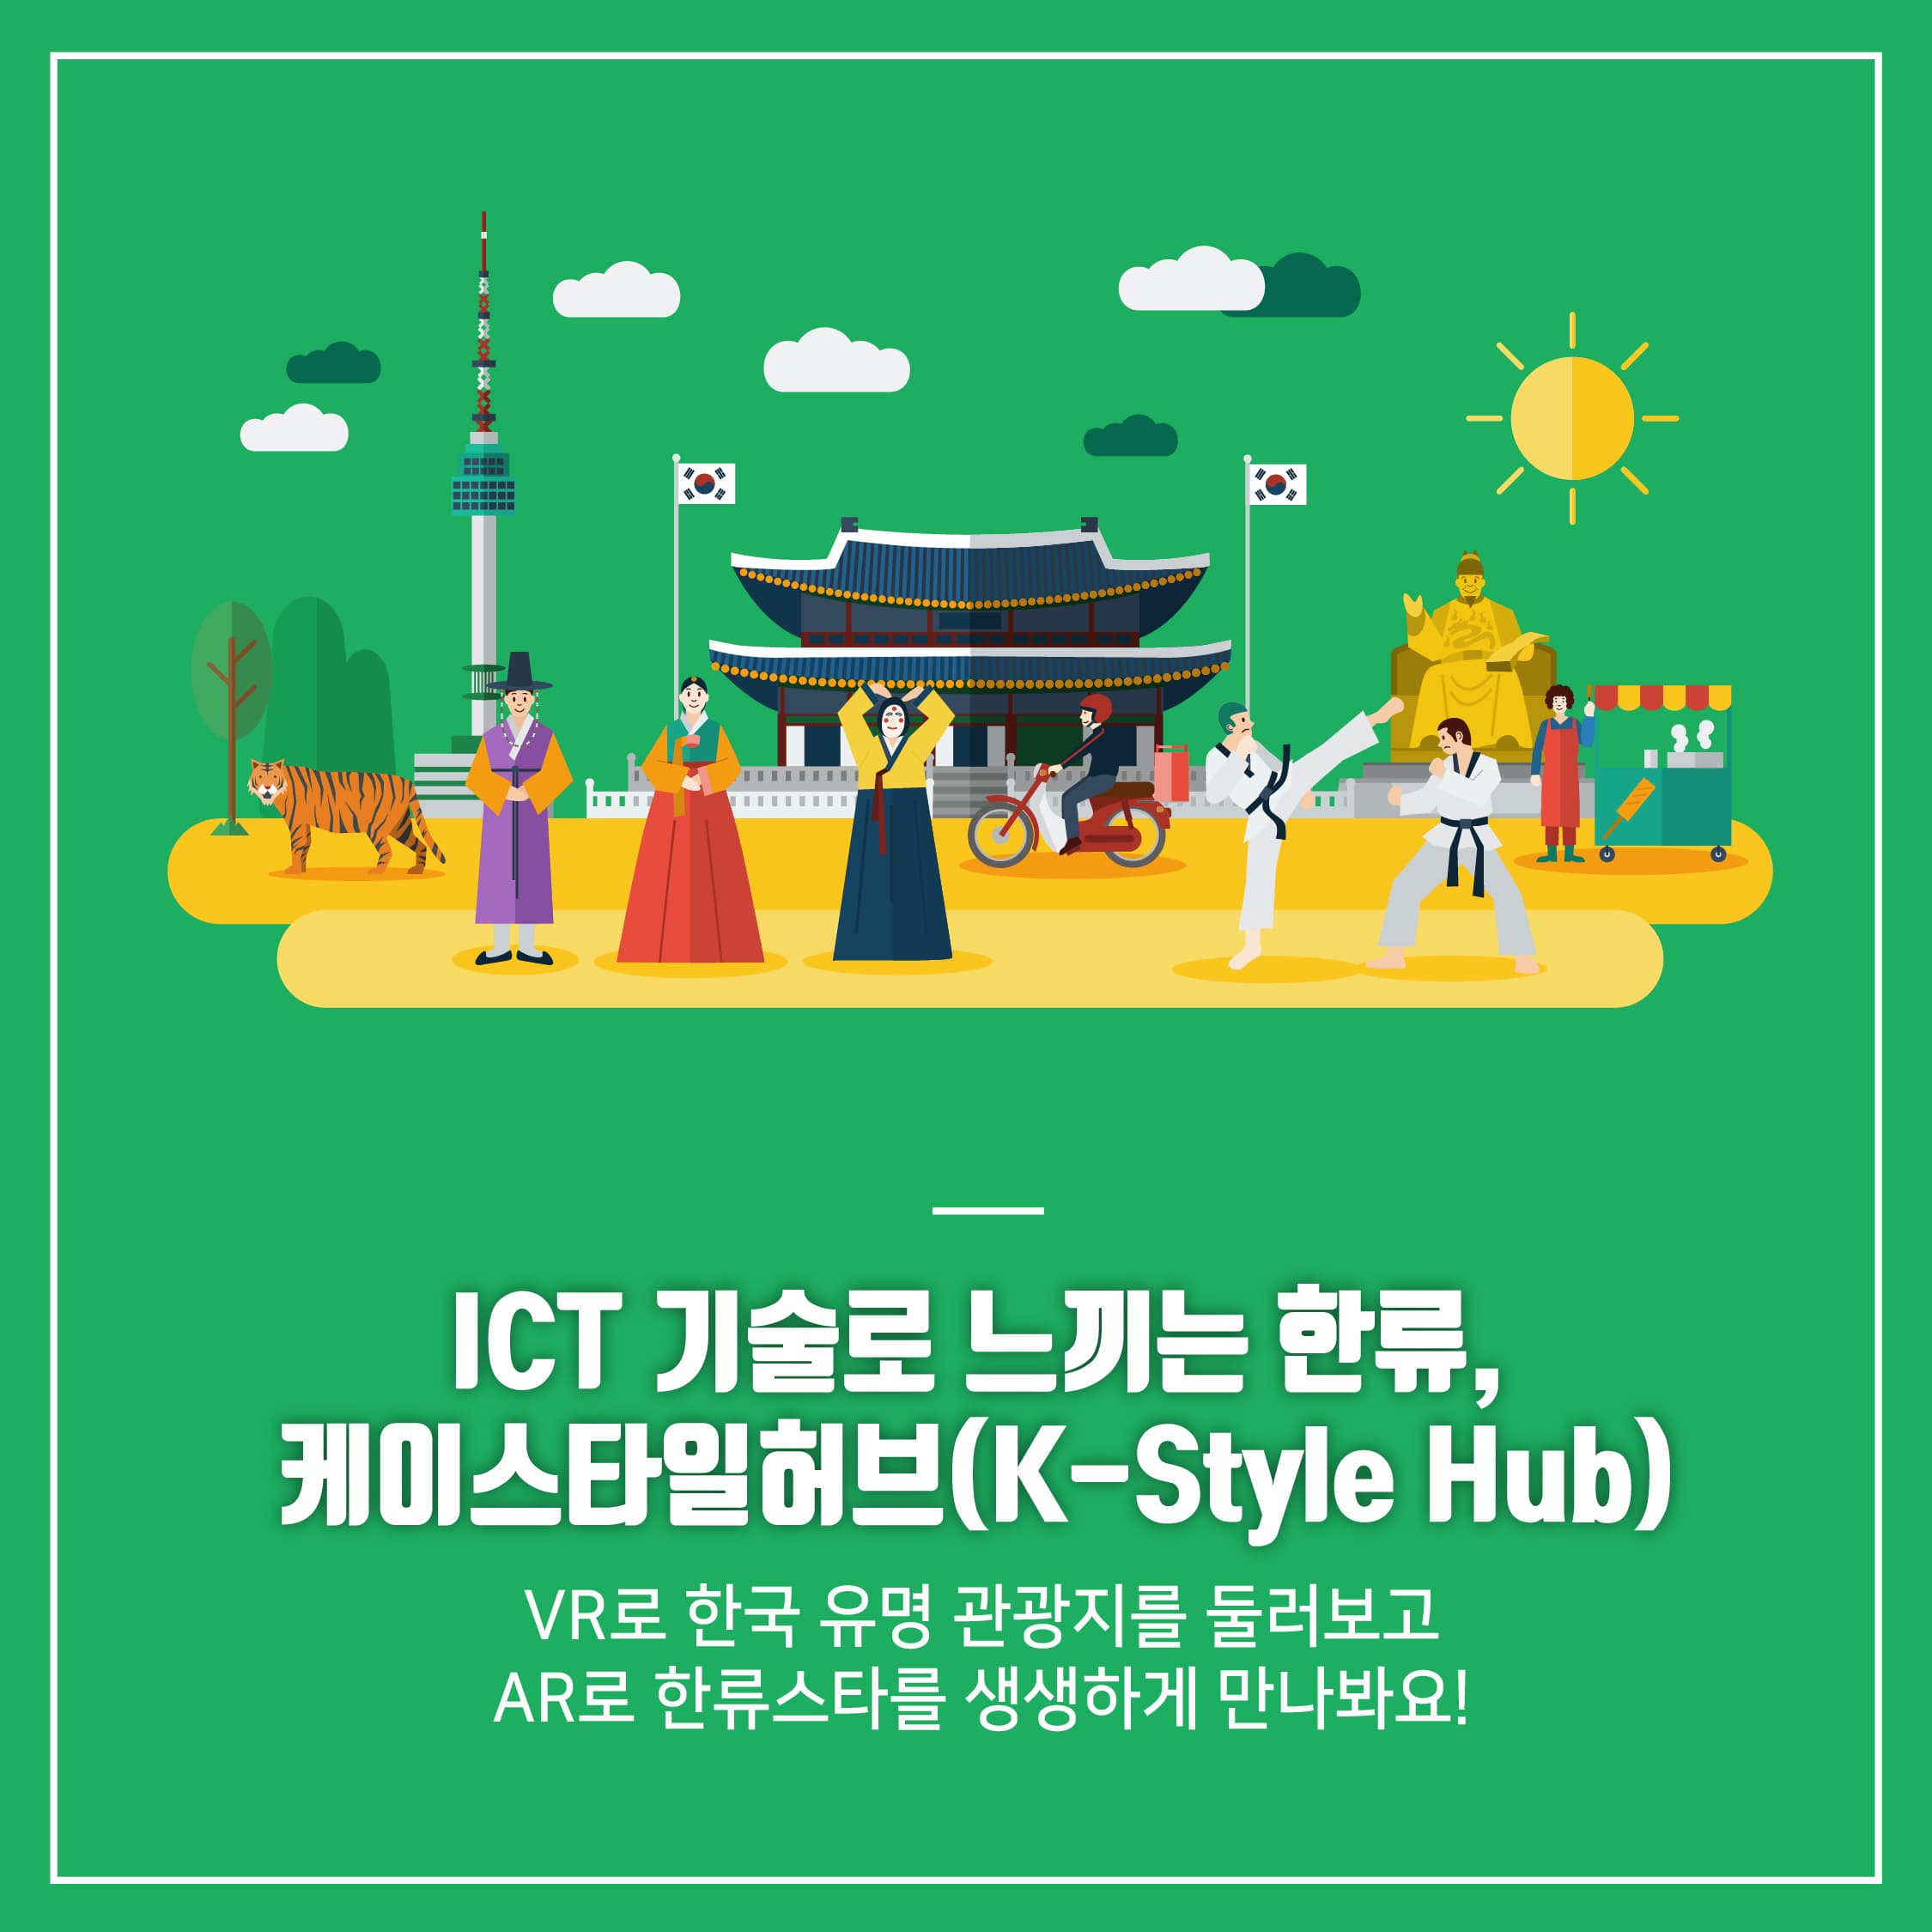 ICT기술로 느끼는 한류, 케이스타일허브(K-Style Hub)
VR로 한국 유명 관광지를 둘러보고 AR로 한류스타를 생생하게 만나봐요